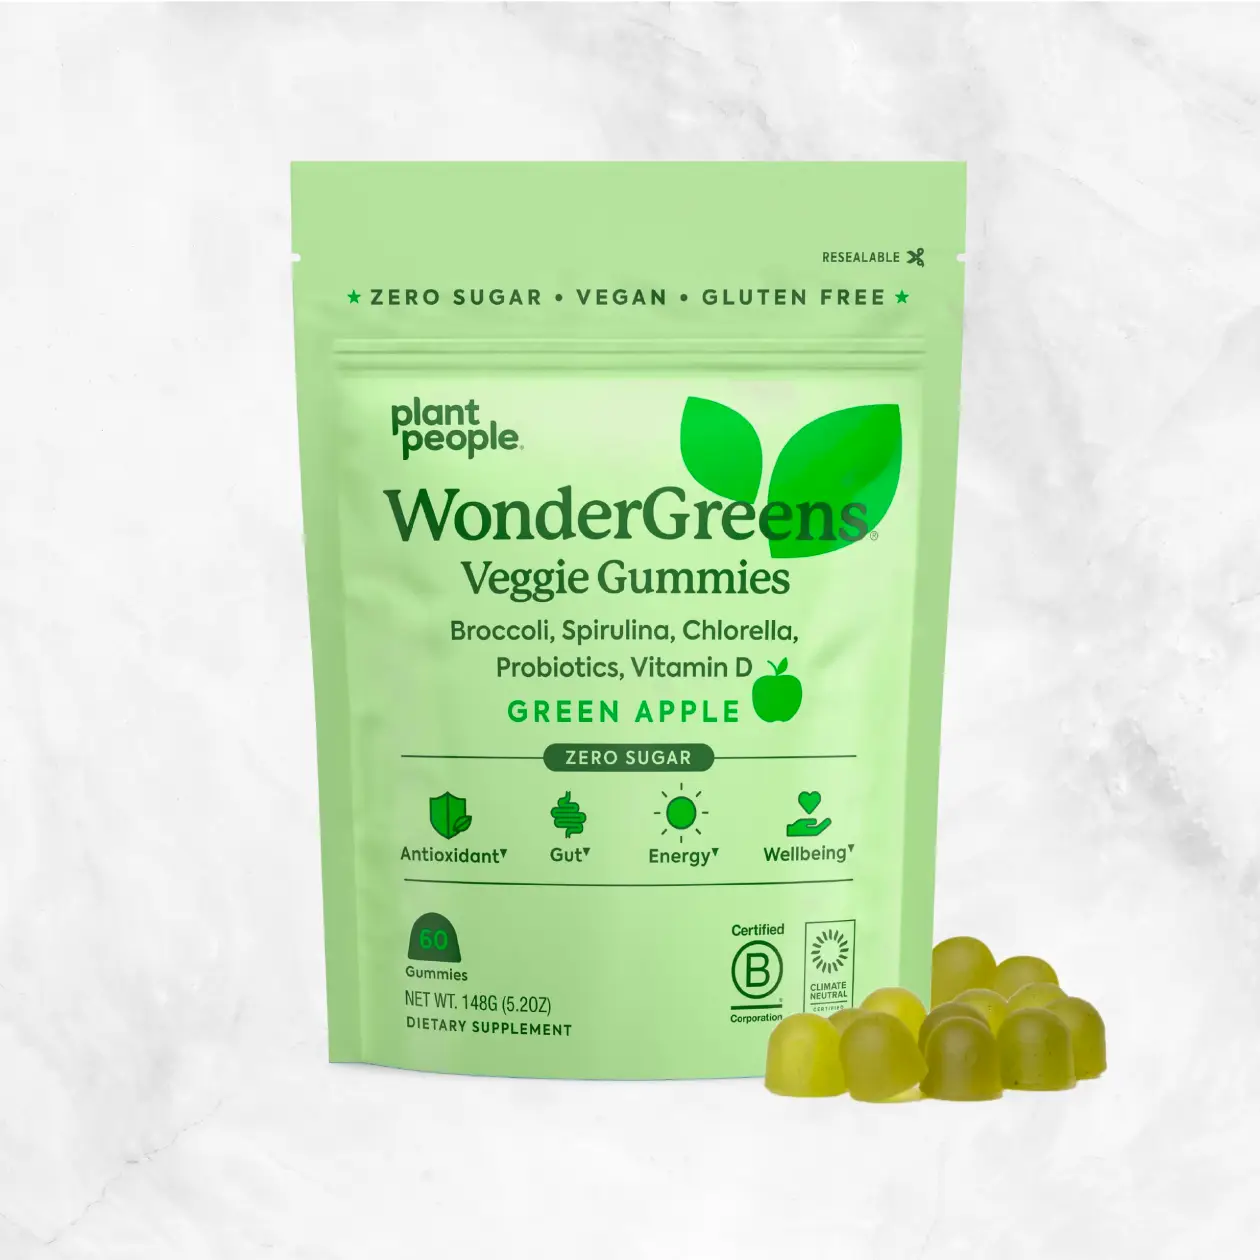 WonderGreens Veggie Gummies Delivery